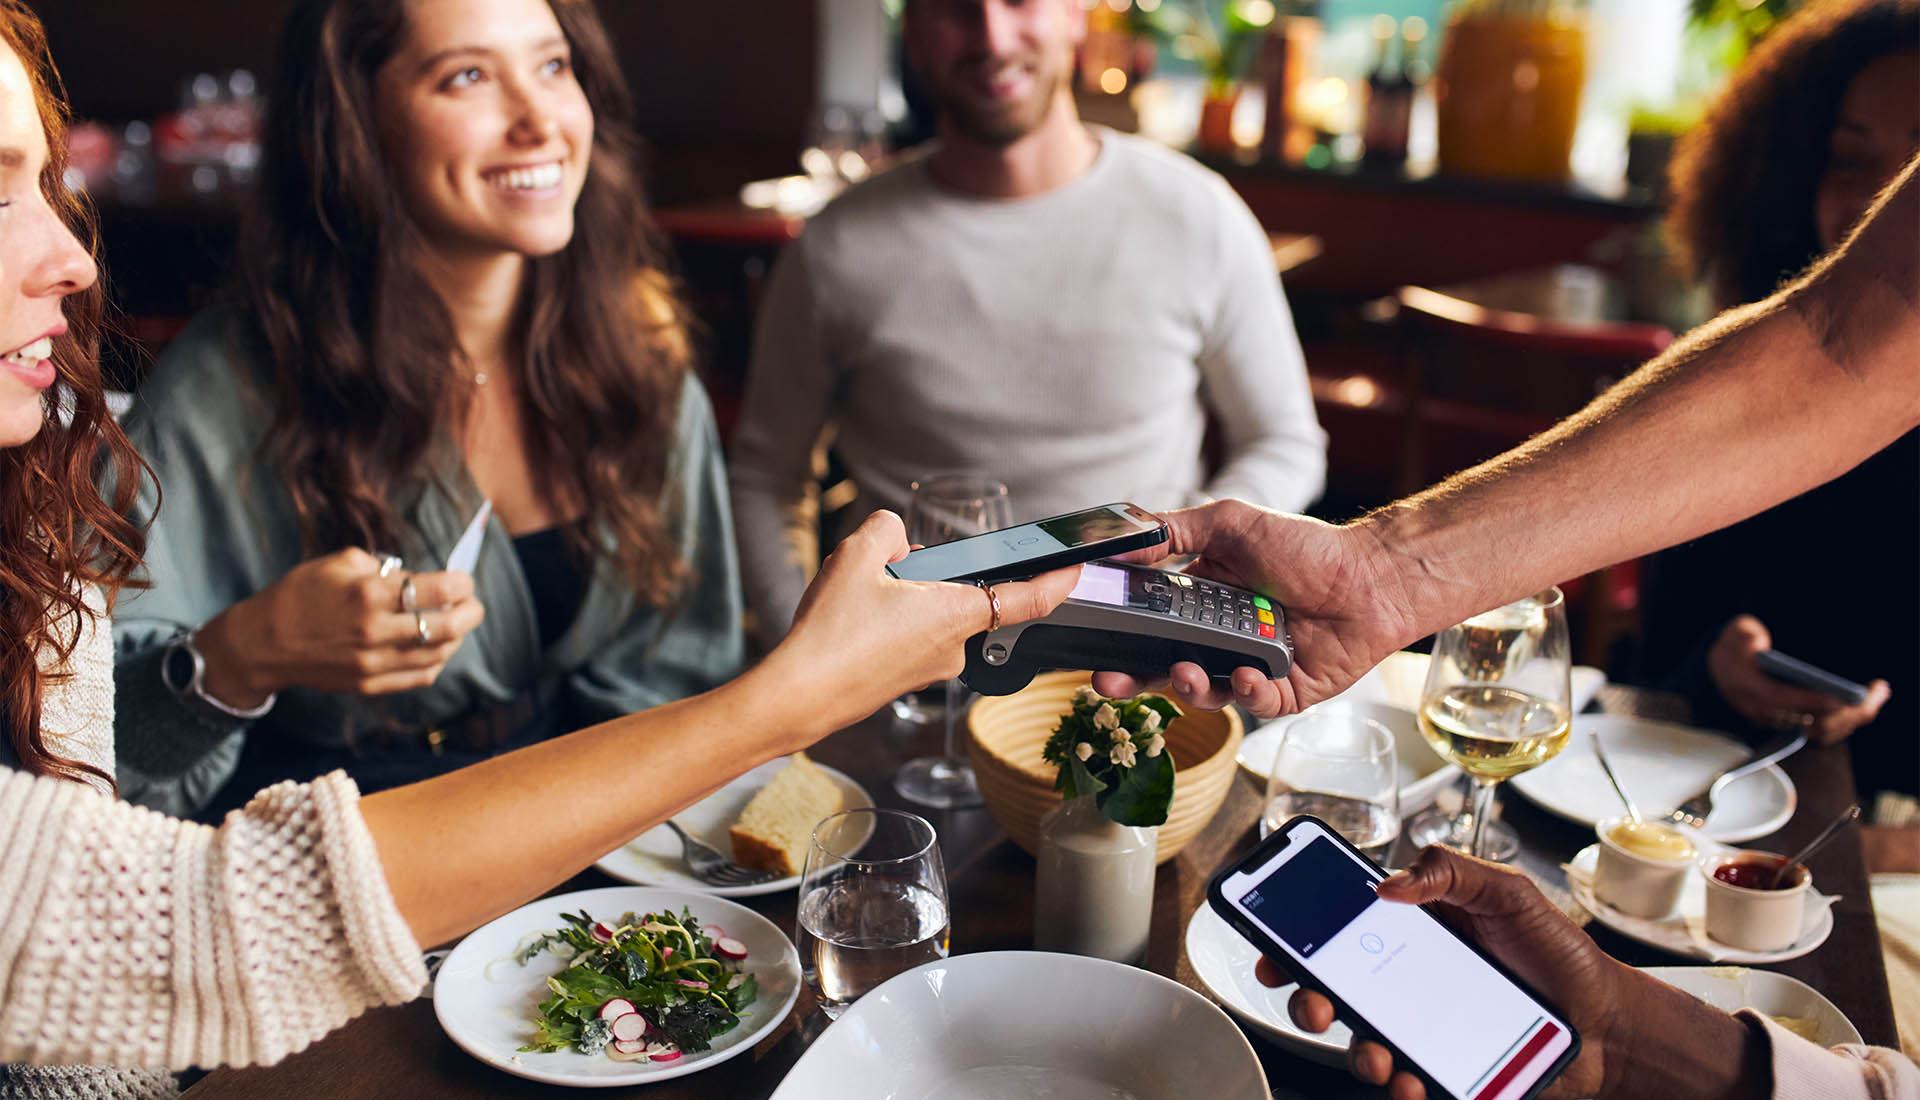 Mobile ordering app for restaurant